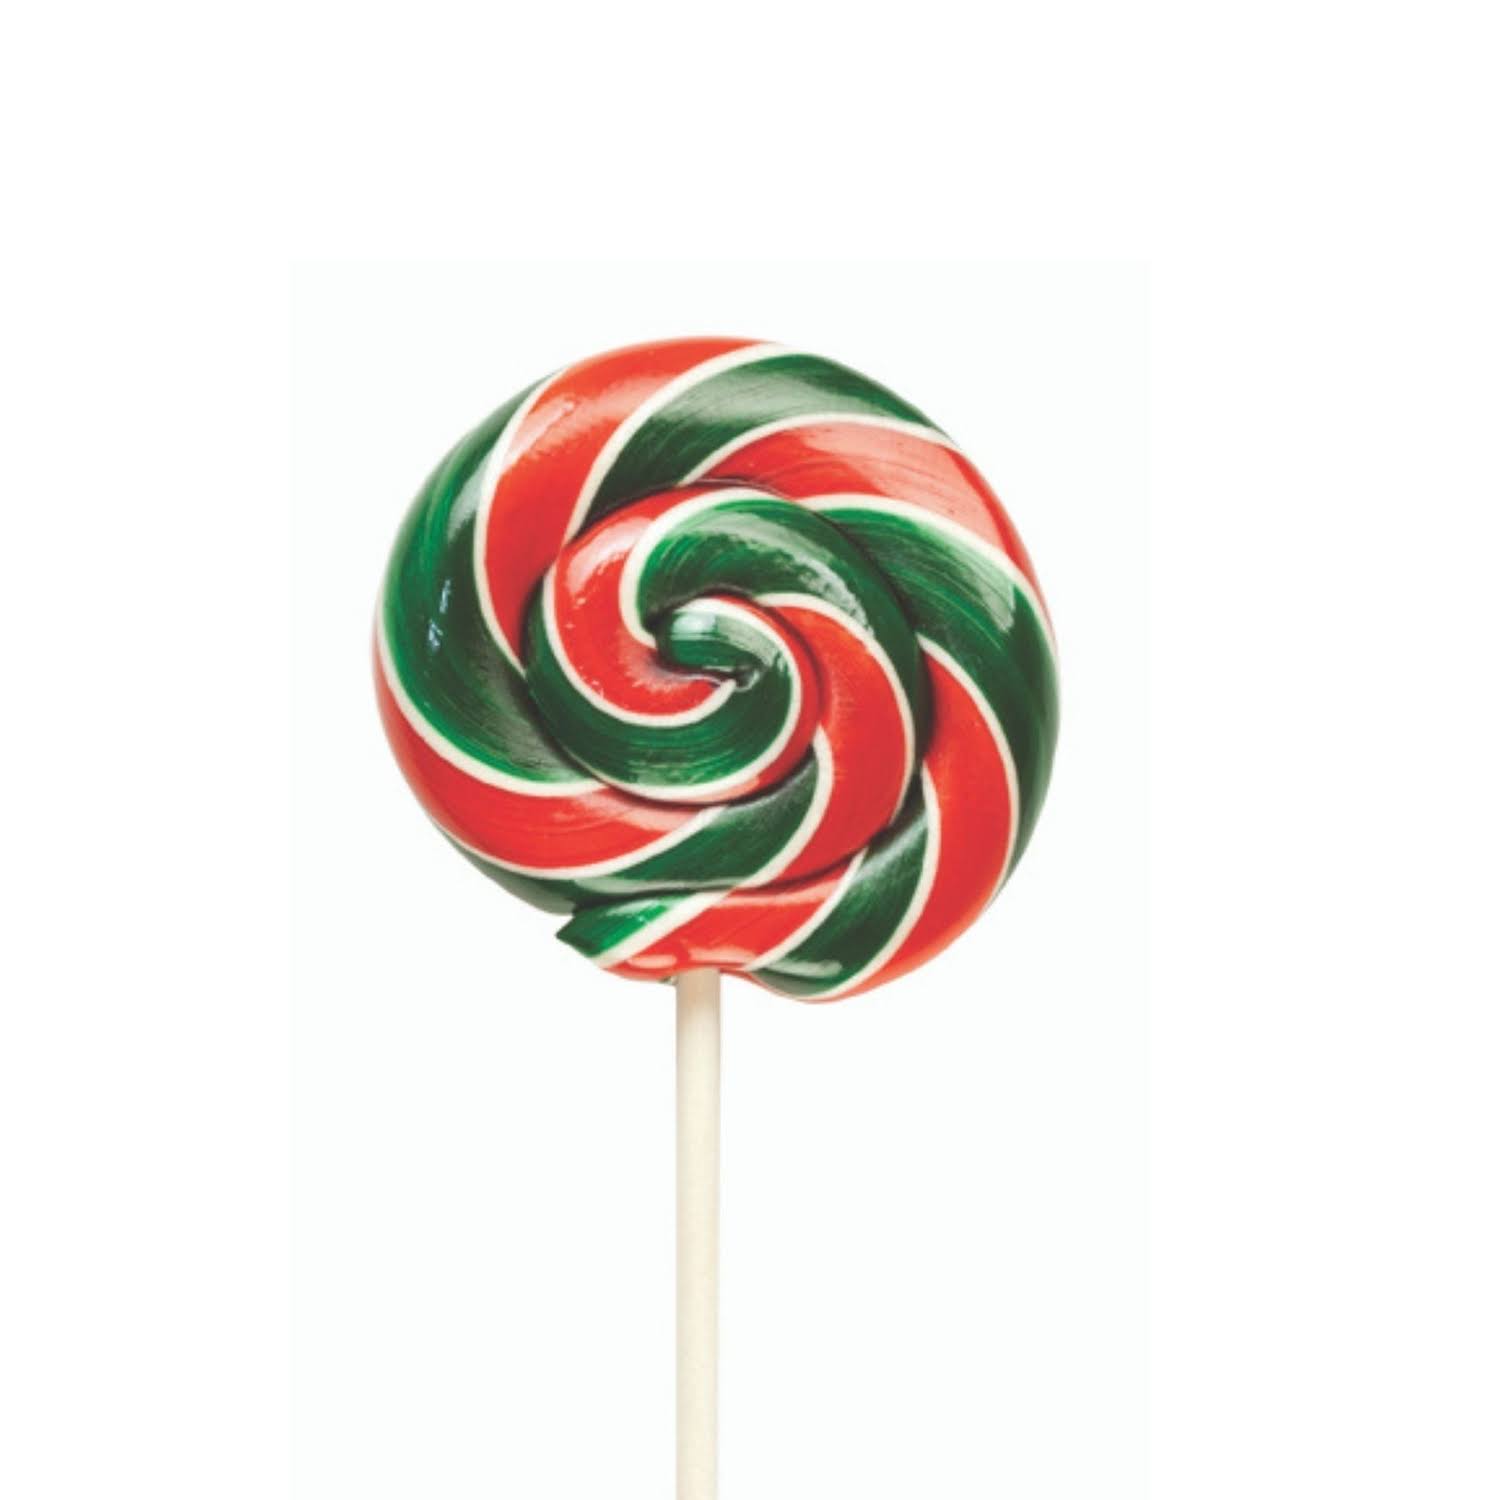 Hammonds Candy Cherry Lollipop - Green Red Stripe, 1oz